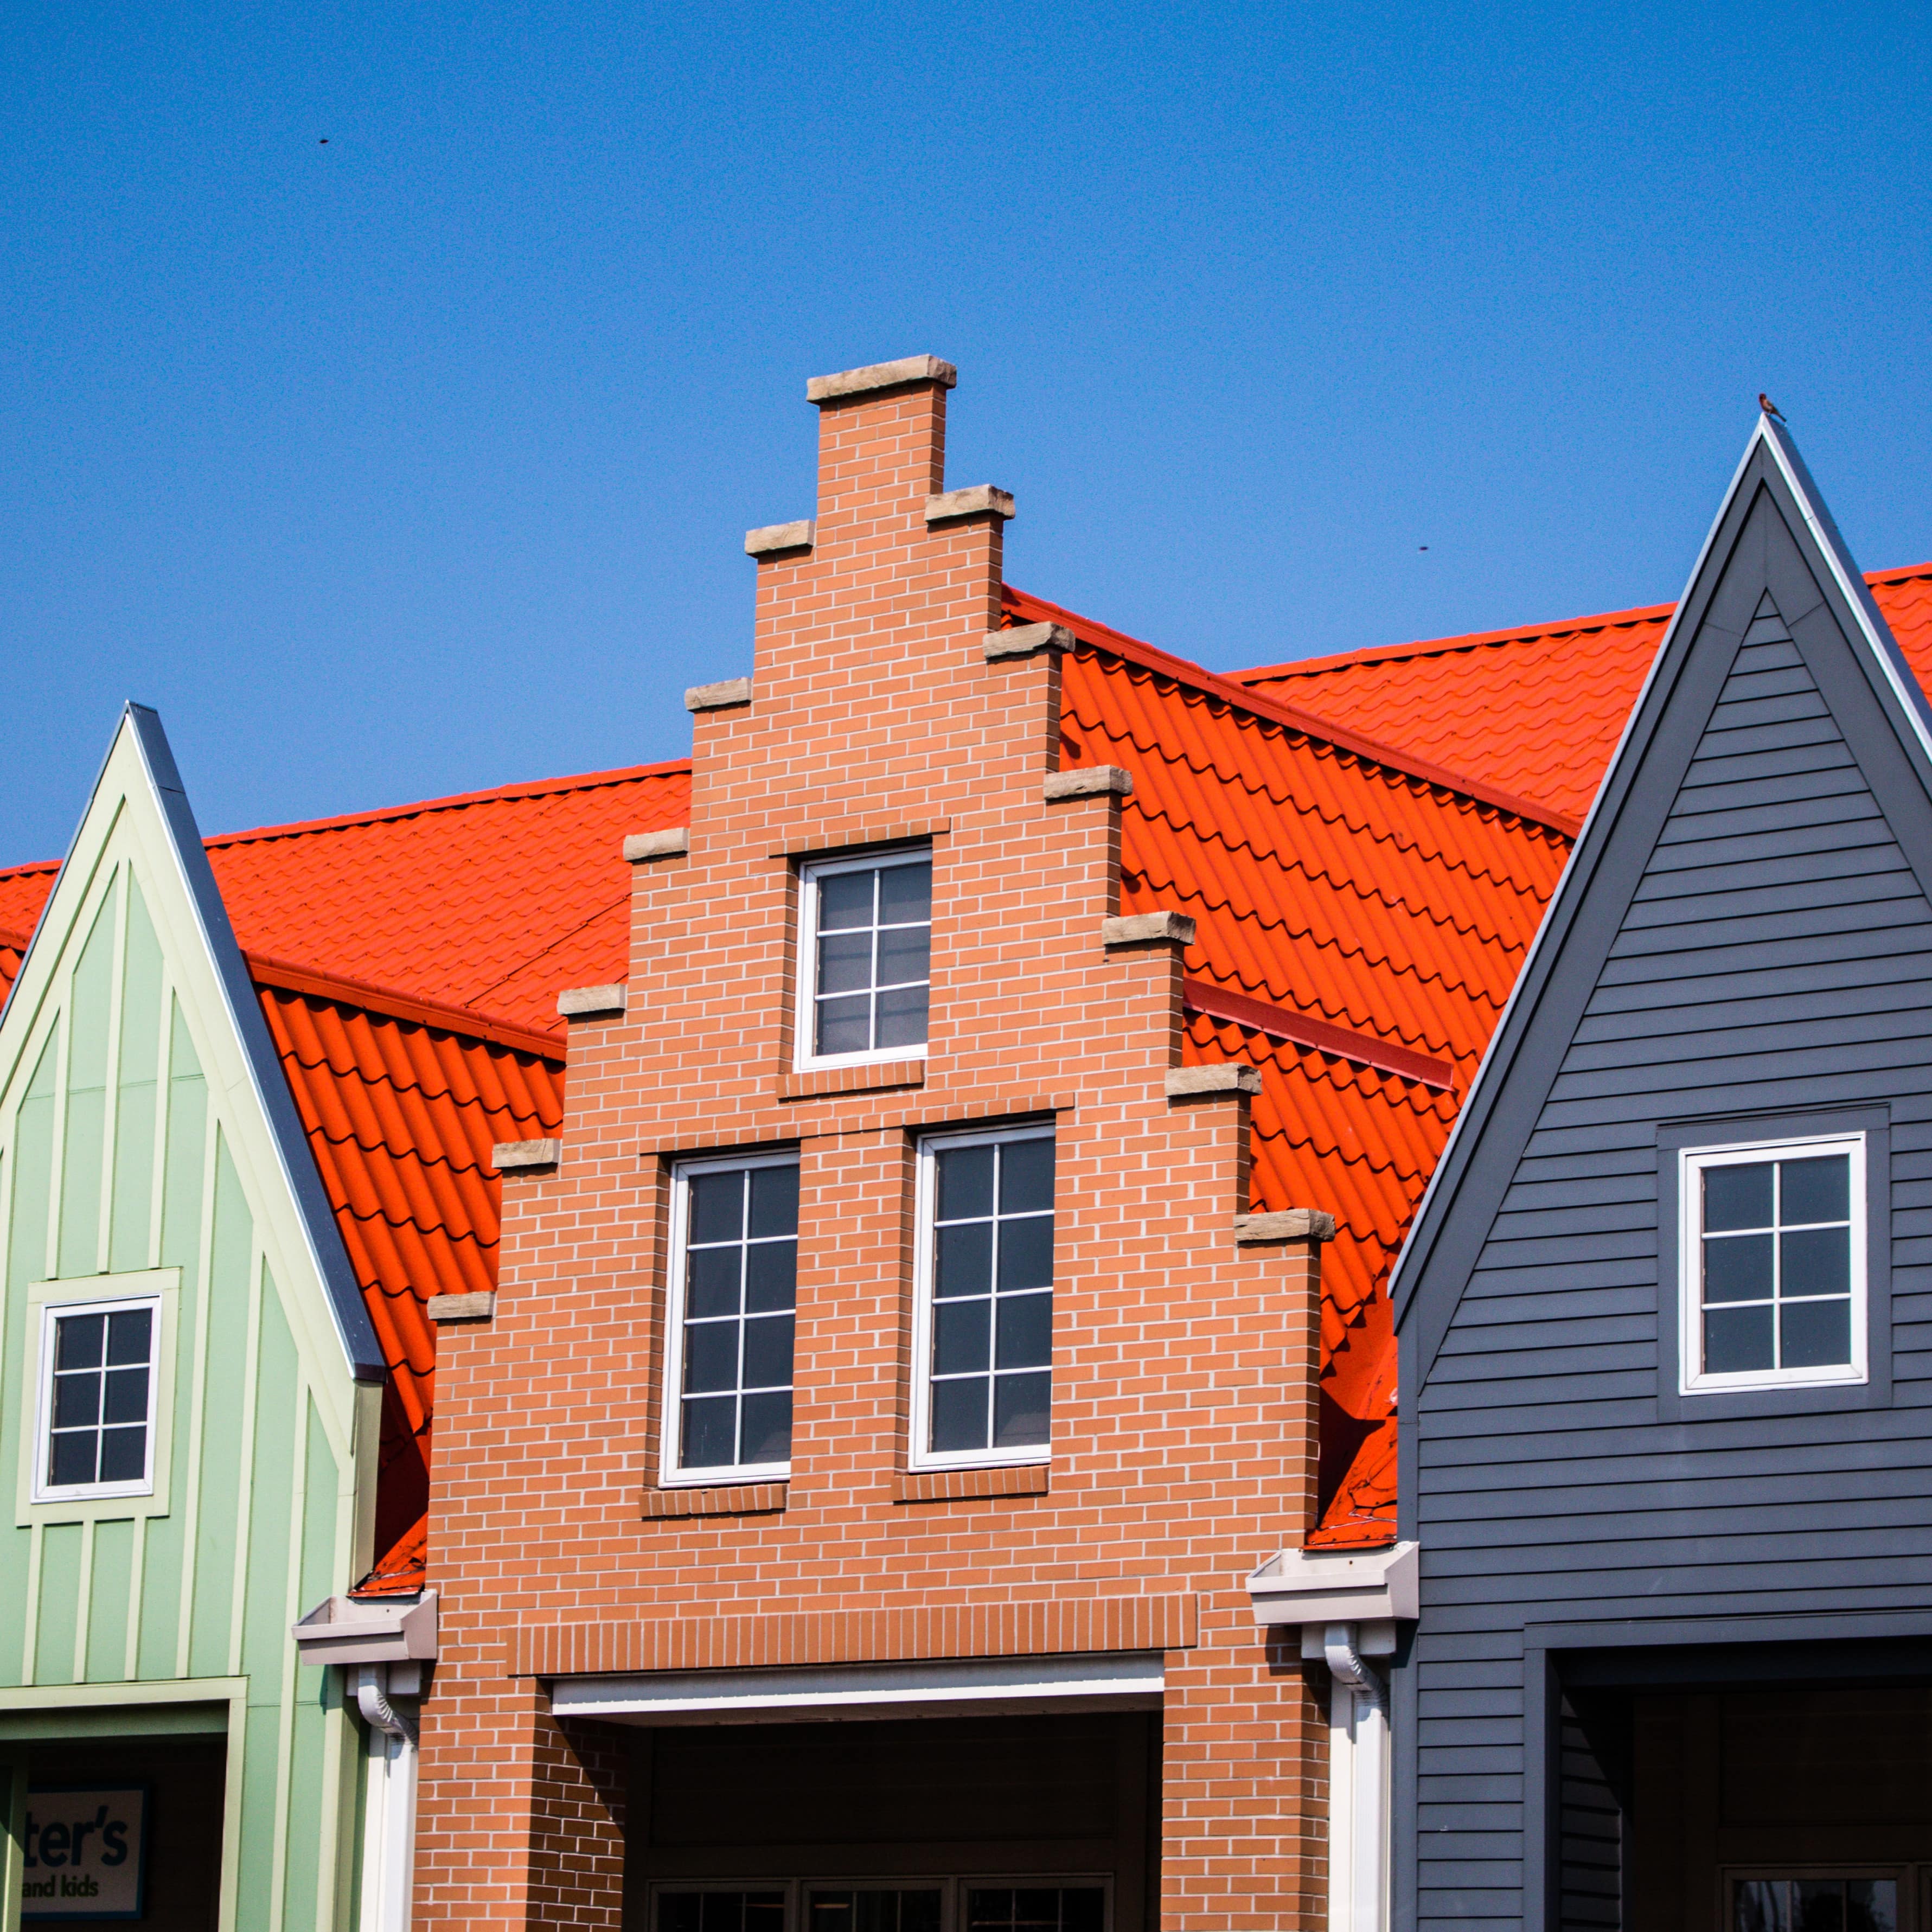 Ferienwohnungen in bunter, moderner Häuserzeile mit typisch niederländischen Giebeln